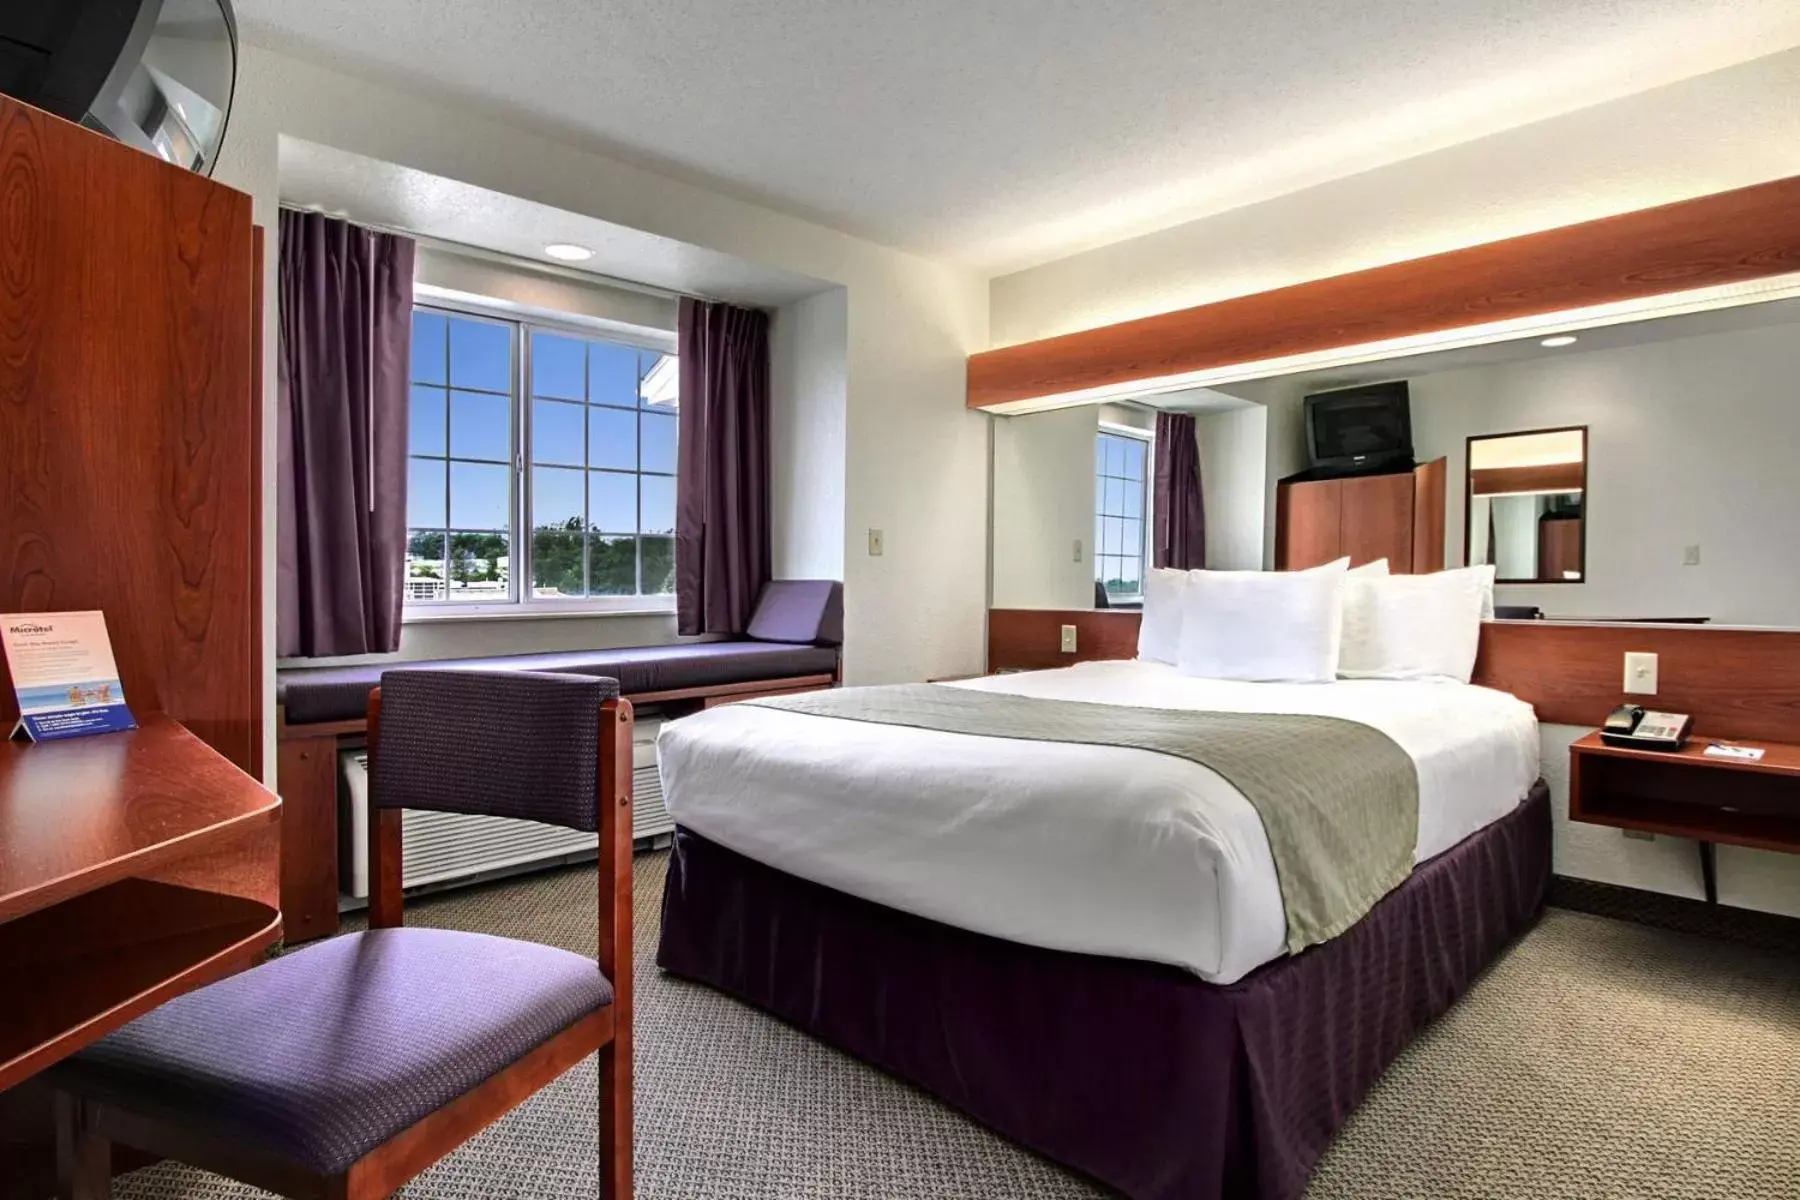 Bed, Room Photo in Microtel Inn & Suites by Wyndham Bridgeport